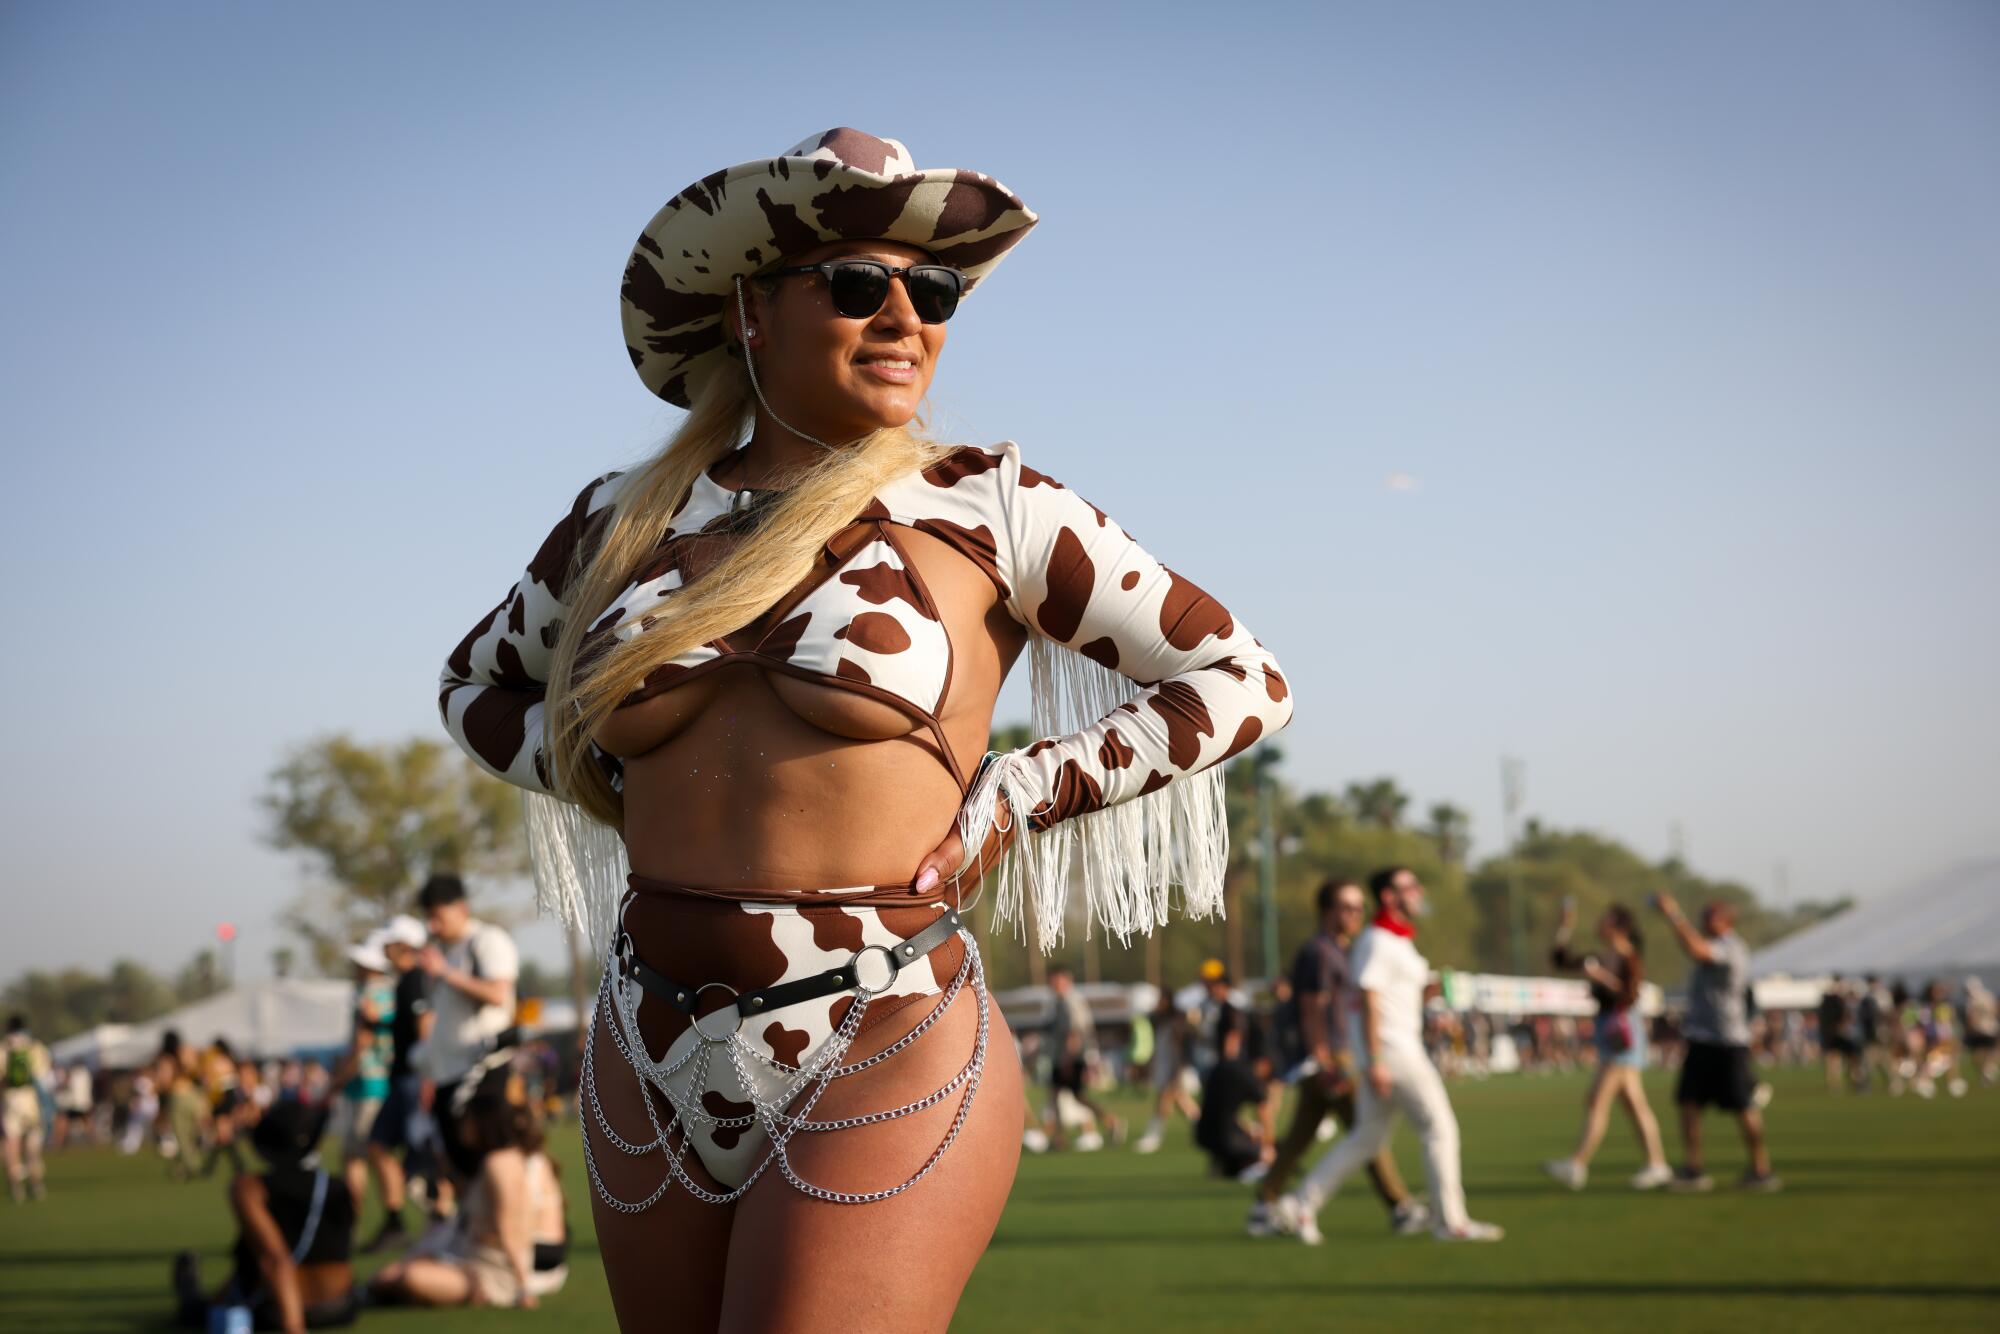 출라 비스타(Chula Vista)의 브렌다 라미레즈(Brenda Ramirez, 33세)는 코첼라(Coachella)에서 소 프린트 의상을 입고 사막의 태양 아래서 반짝인다.